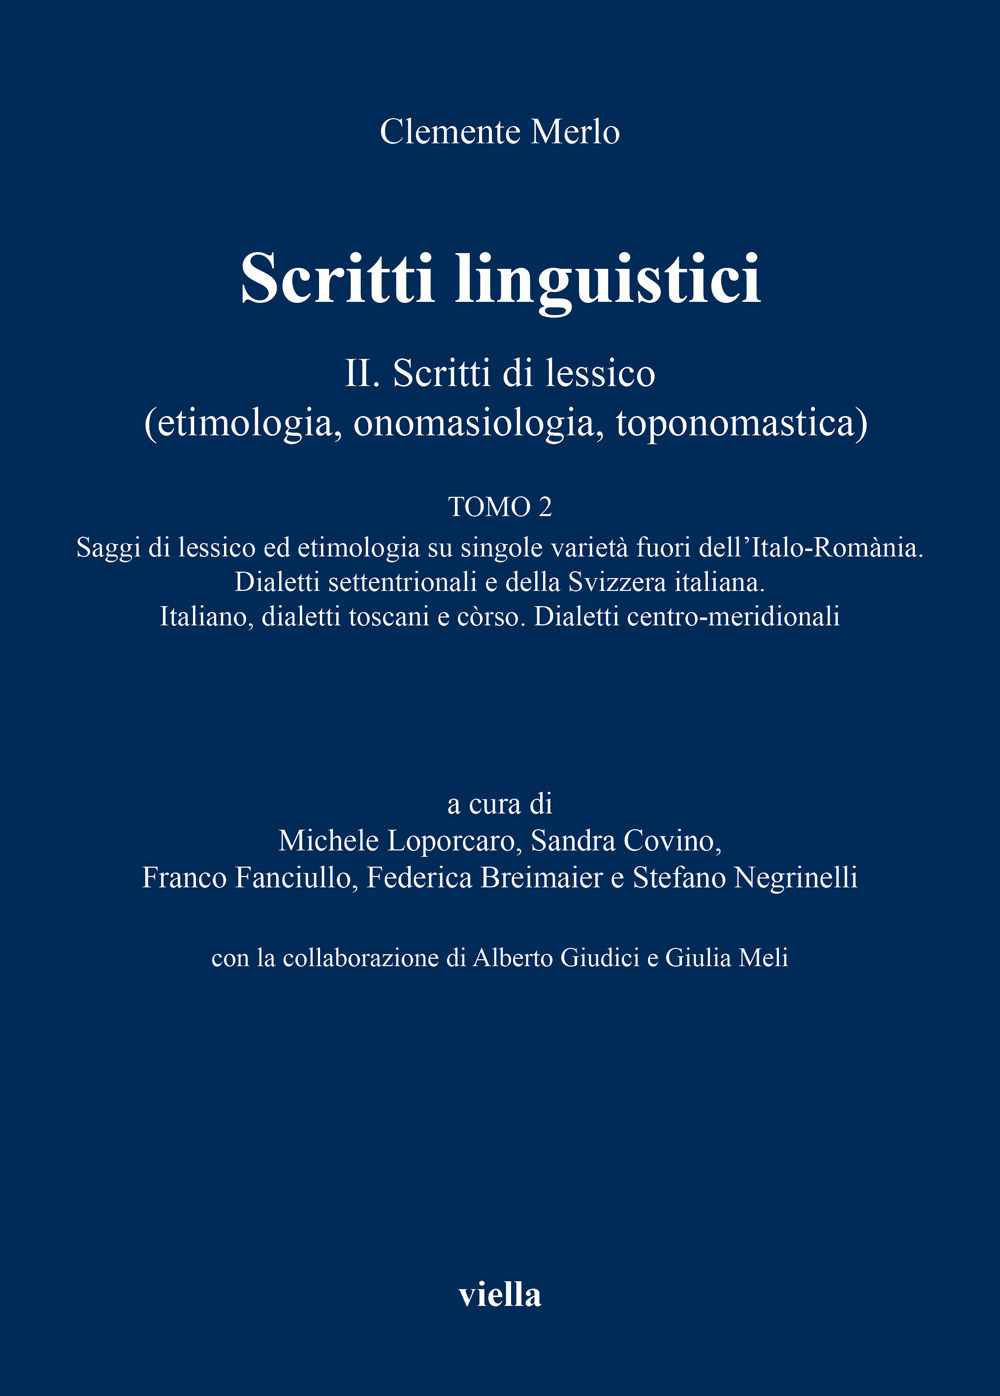 Scritti linguistici. Vol. 2/2: Scritti di lessico (etimologia, onomasiologia, toponomastica)